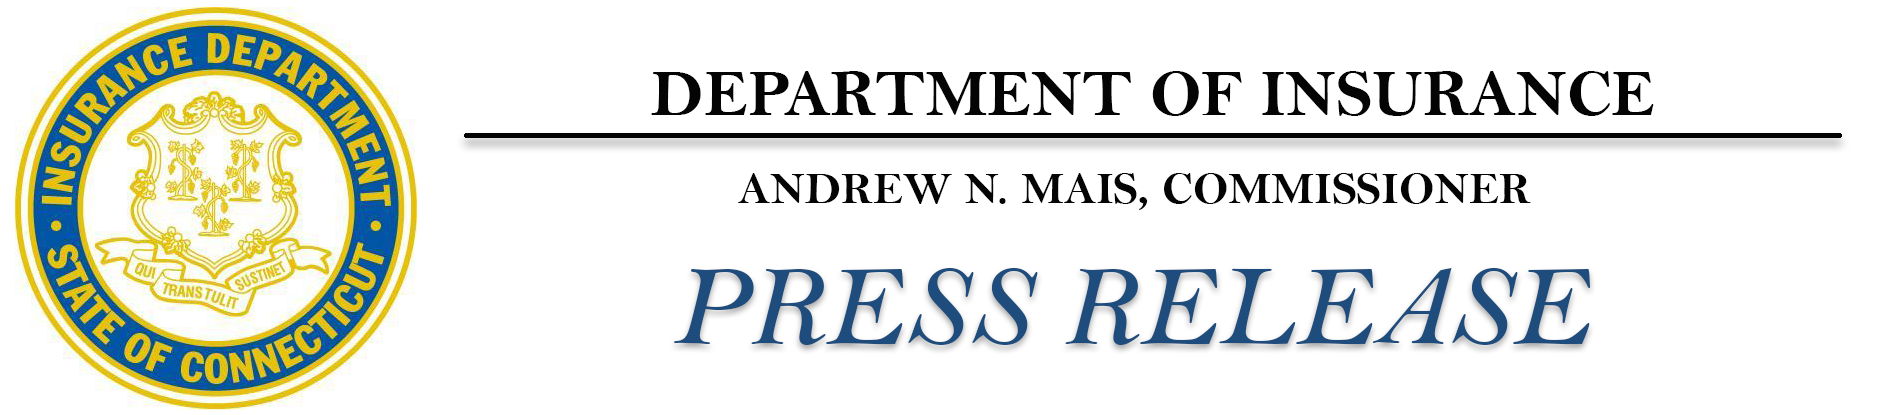 CID Press Releases Header